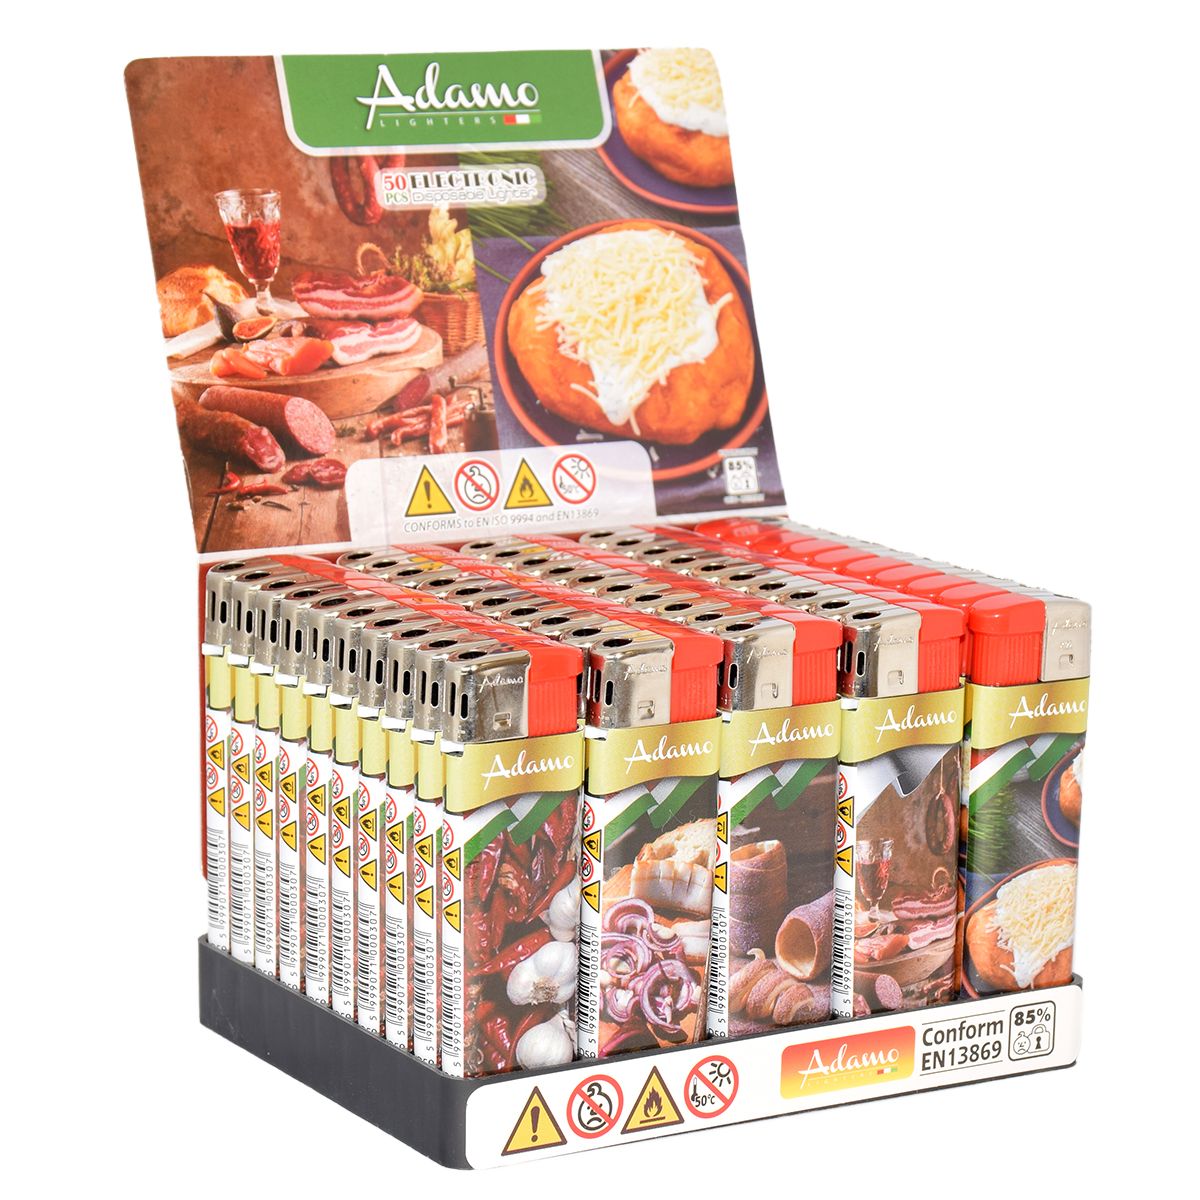 Adamo Adamo Slim Elektronische Feuerzeuge Motiv National Foods bei www.Tabakring.de kaufen